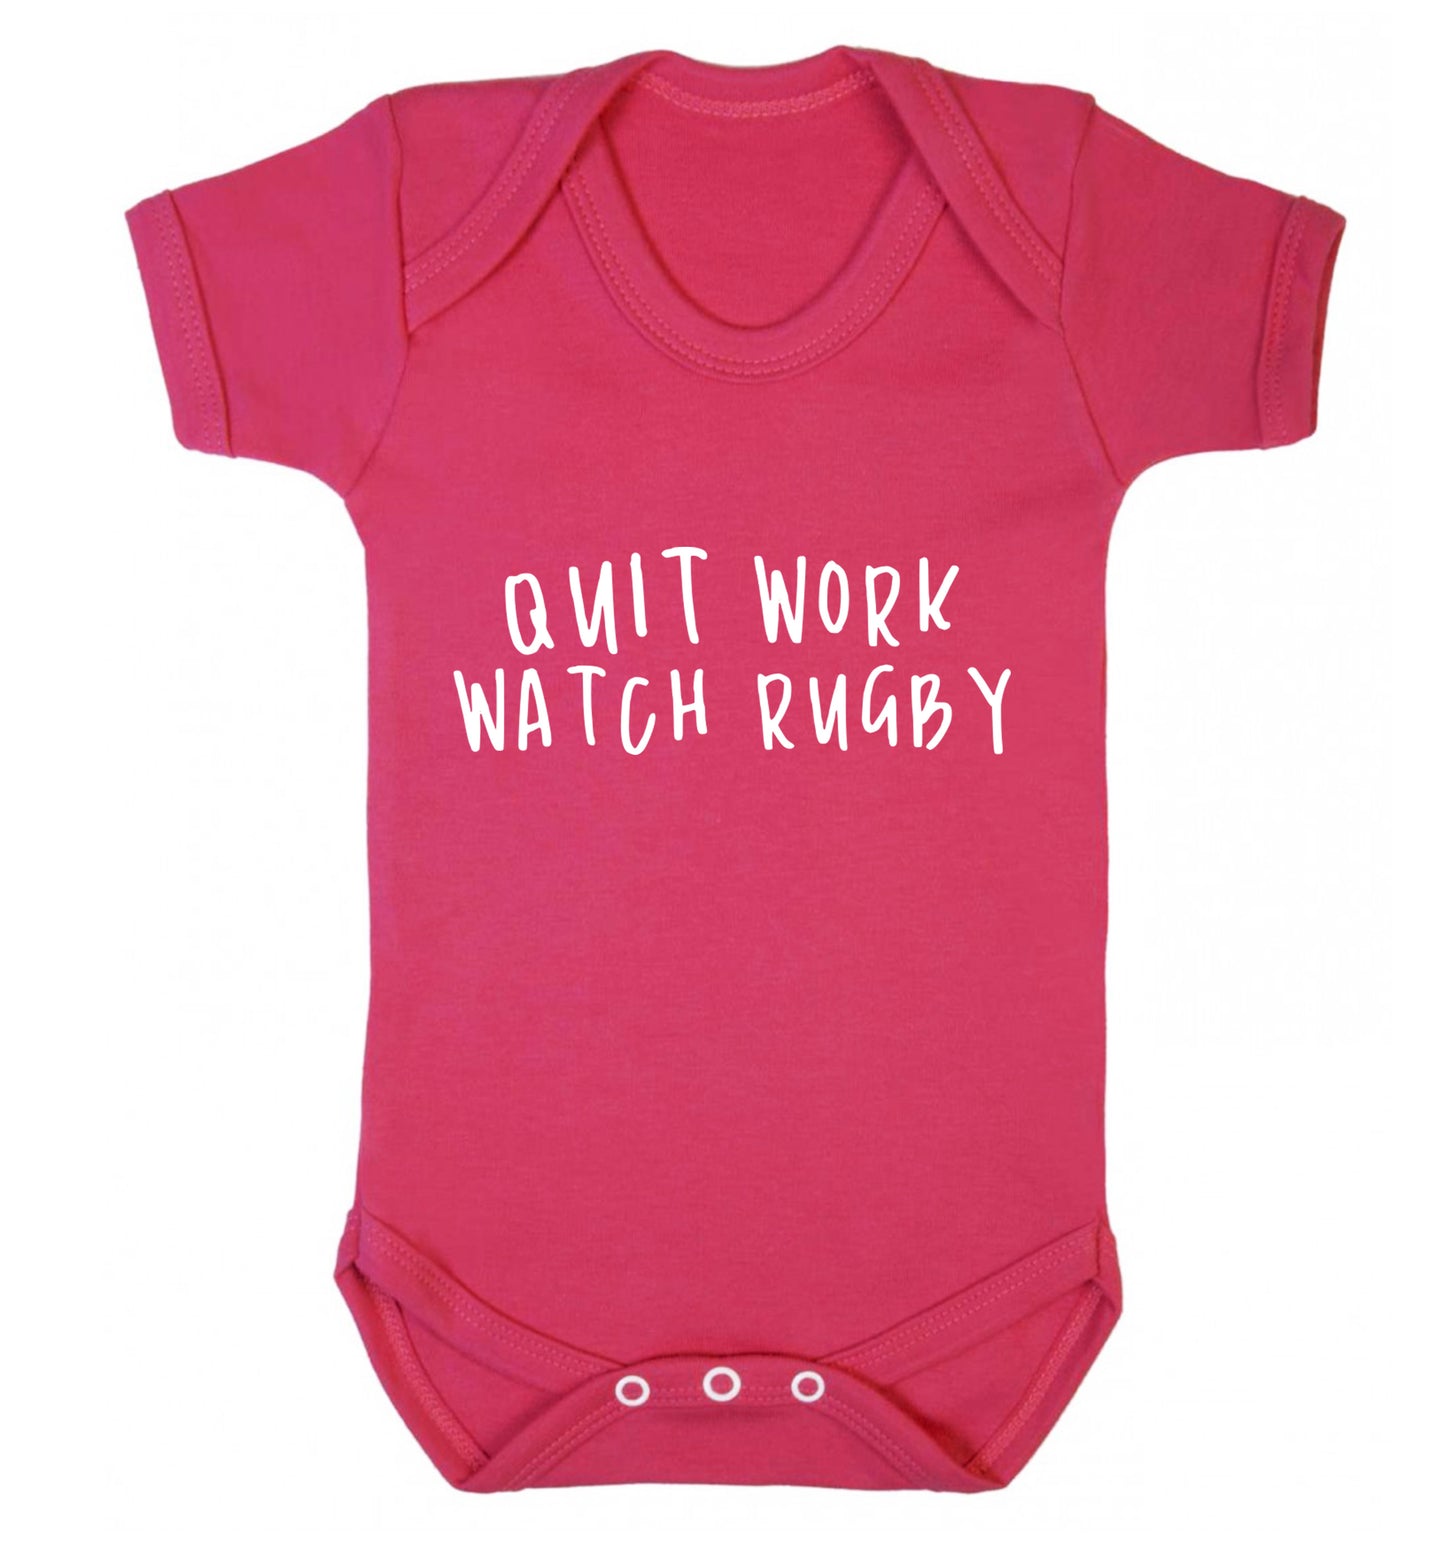 Quit work watch rugby Baby Vest dark pink 18-24 months